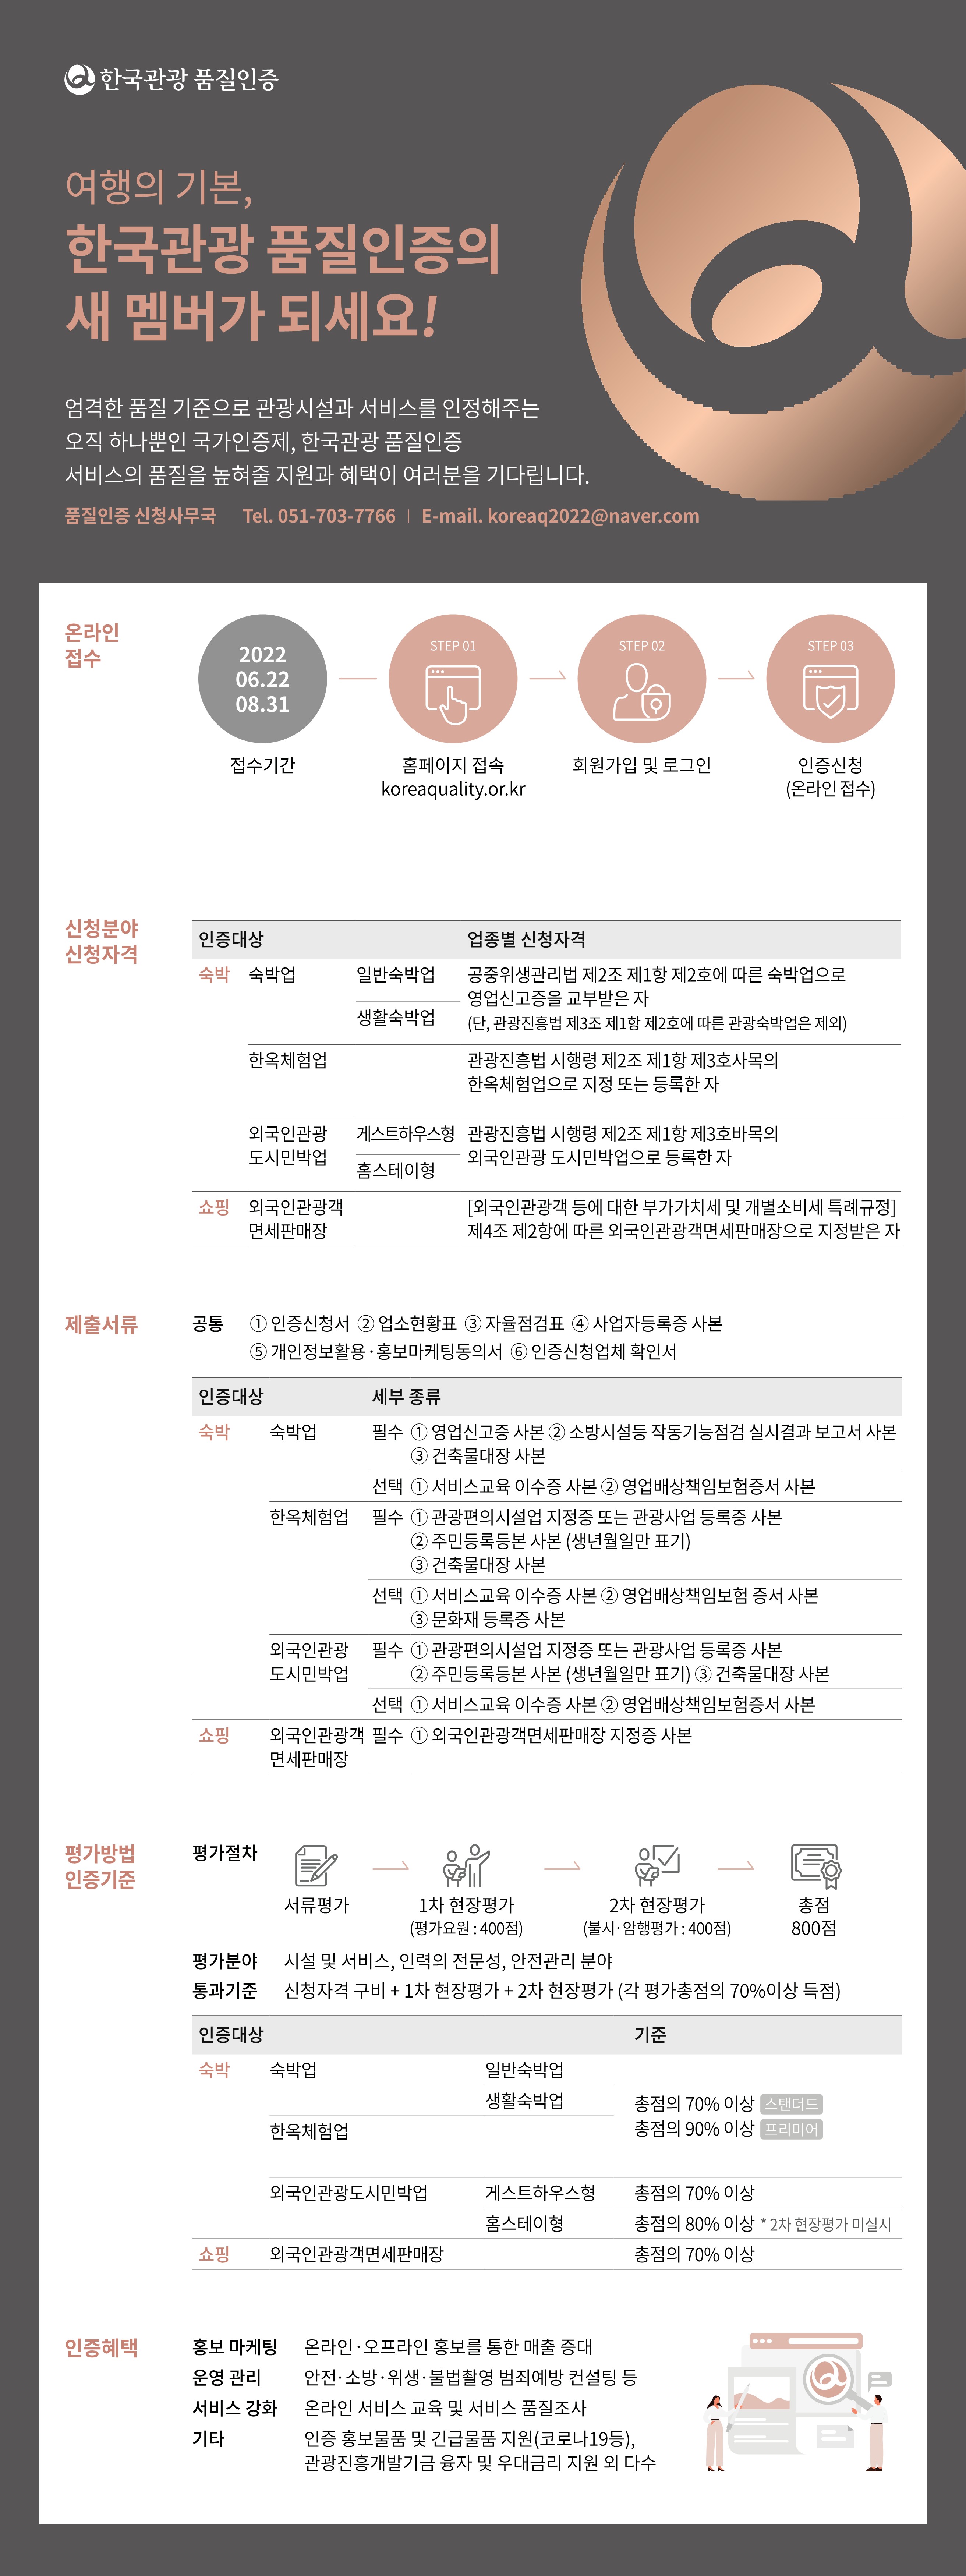 한국관광 품질인증 신청안내 - 아래참조